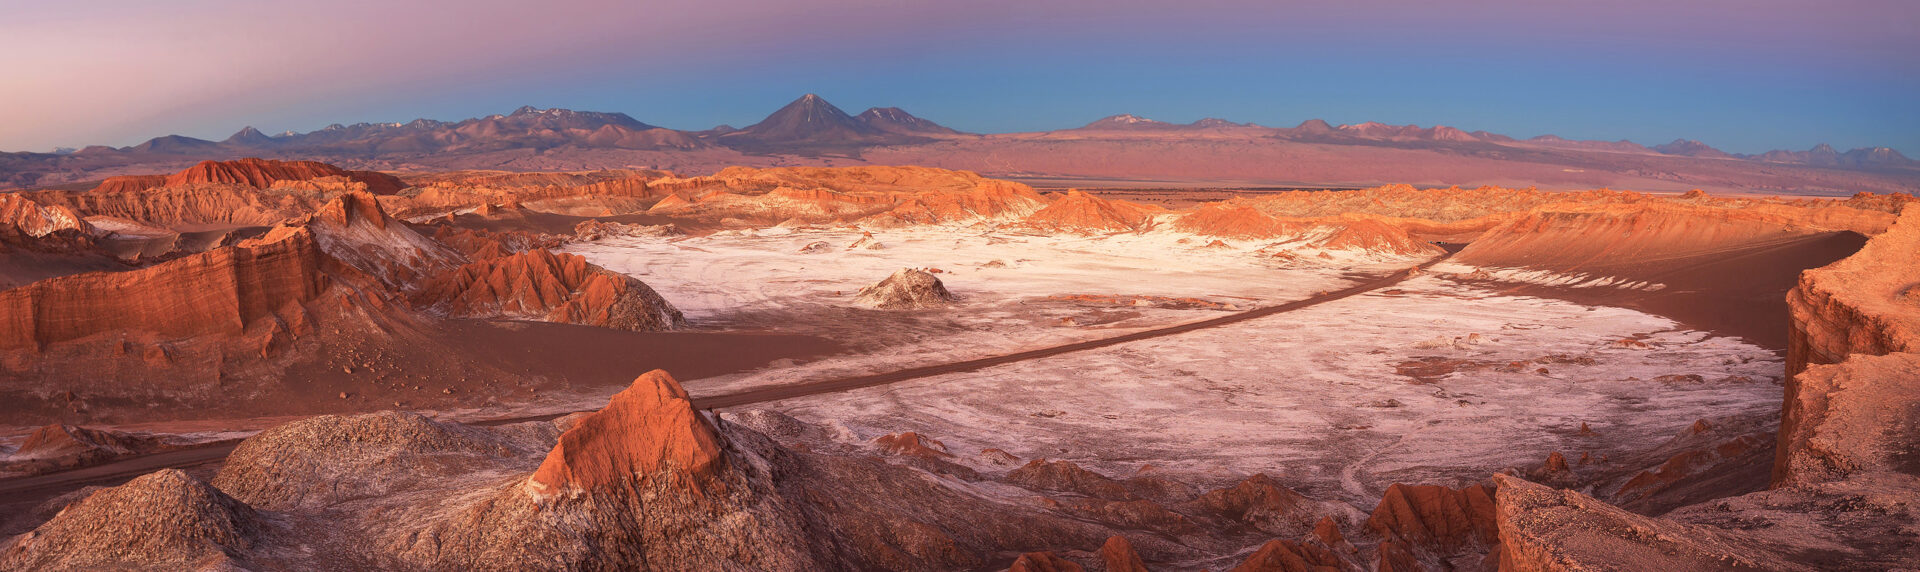 Chili Reizen Atacama Woestijn Maanvalei